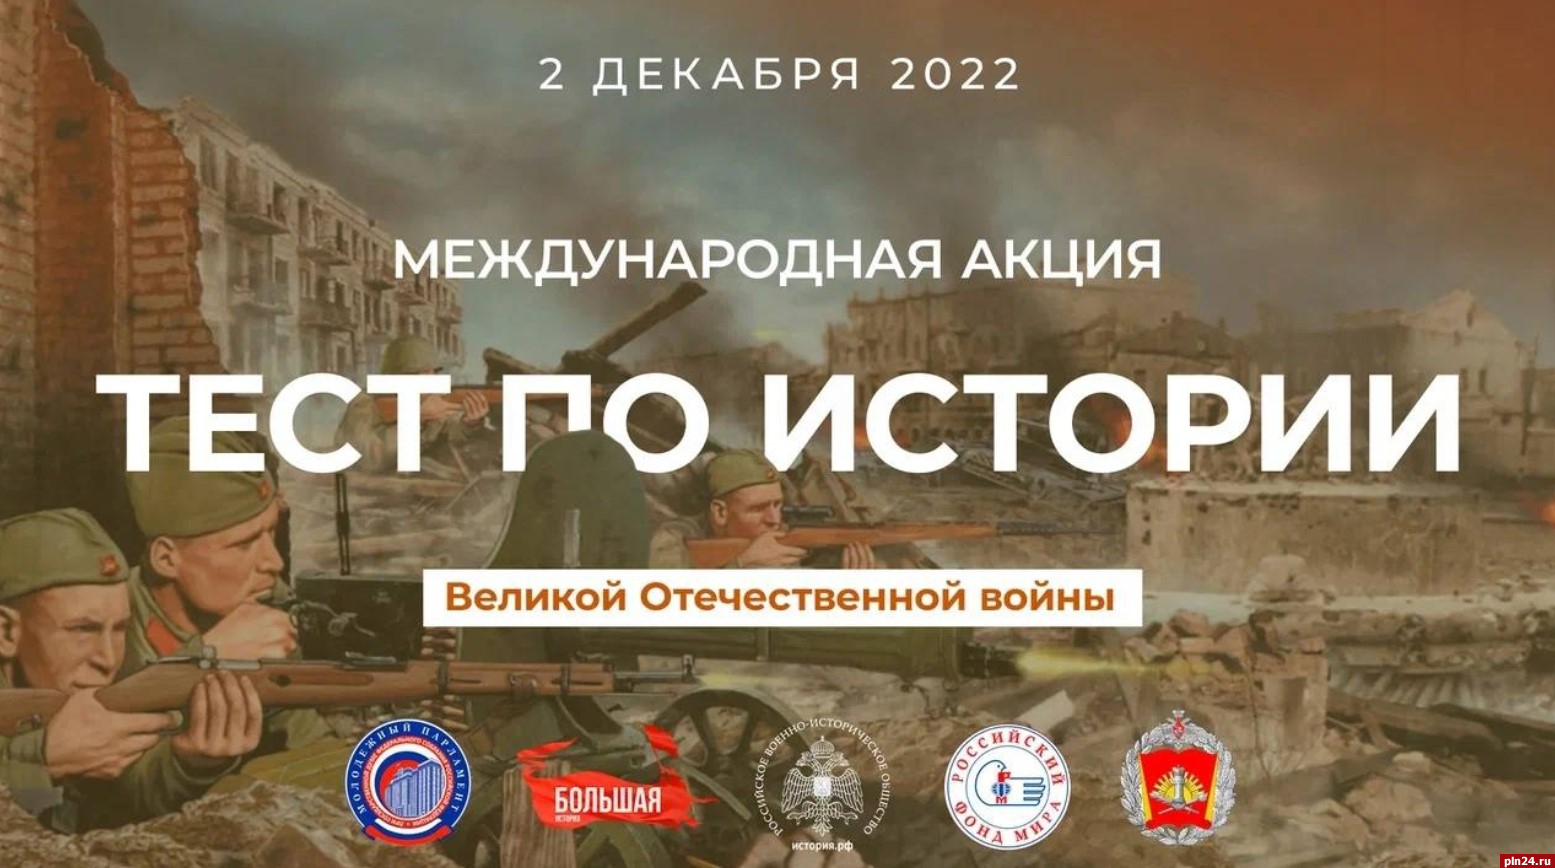 Проверить знания о Великой Отечественной войне приглашает Молодёжный парламент